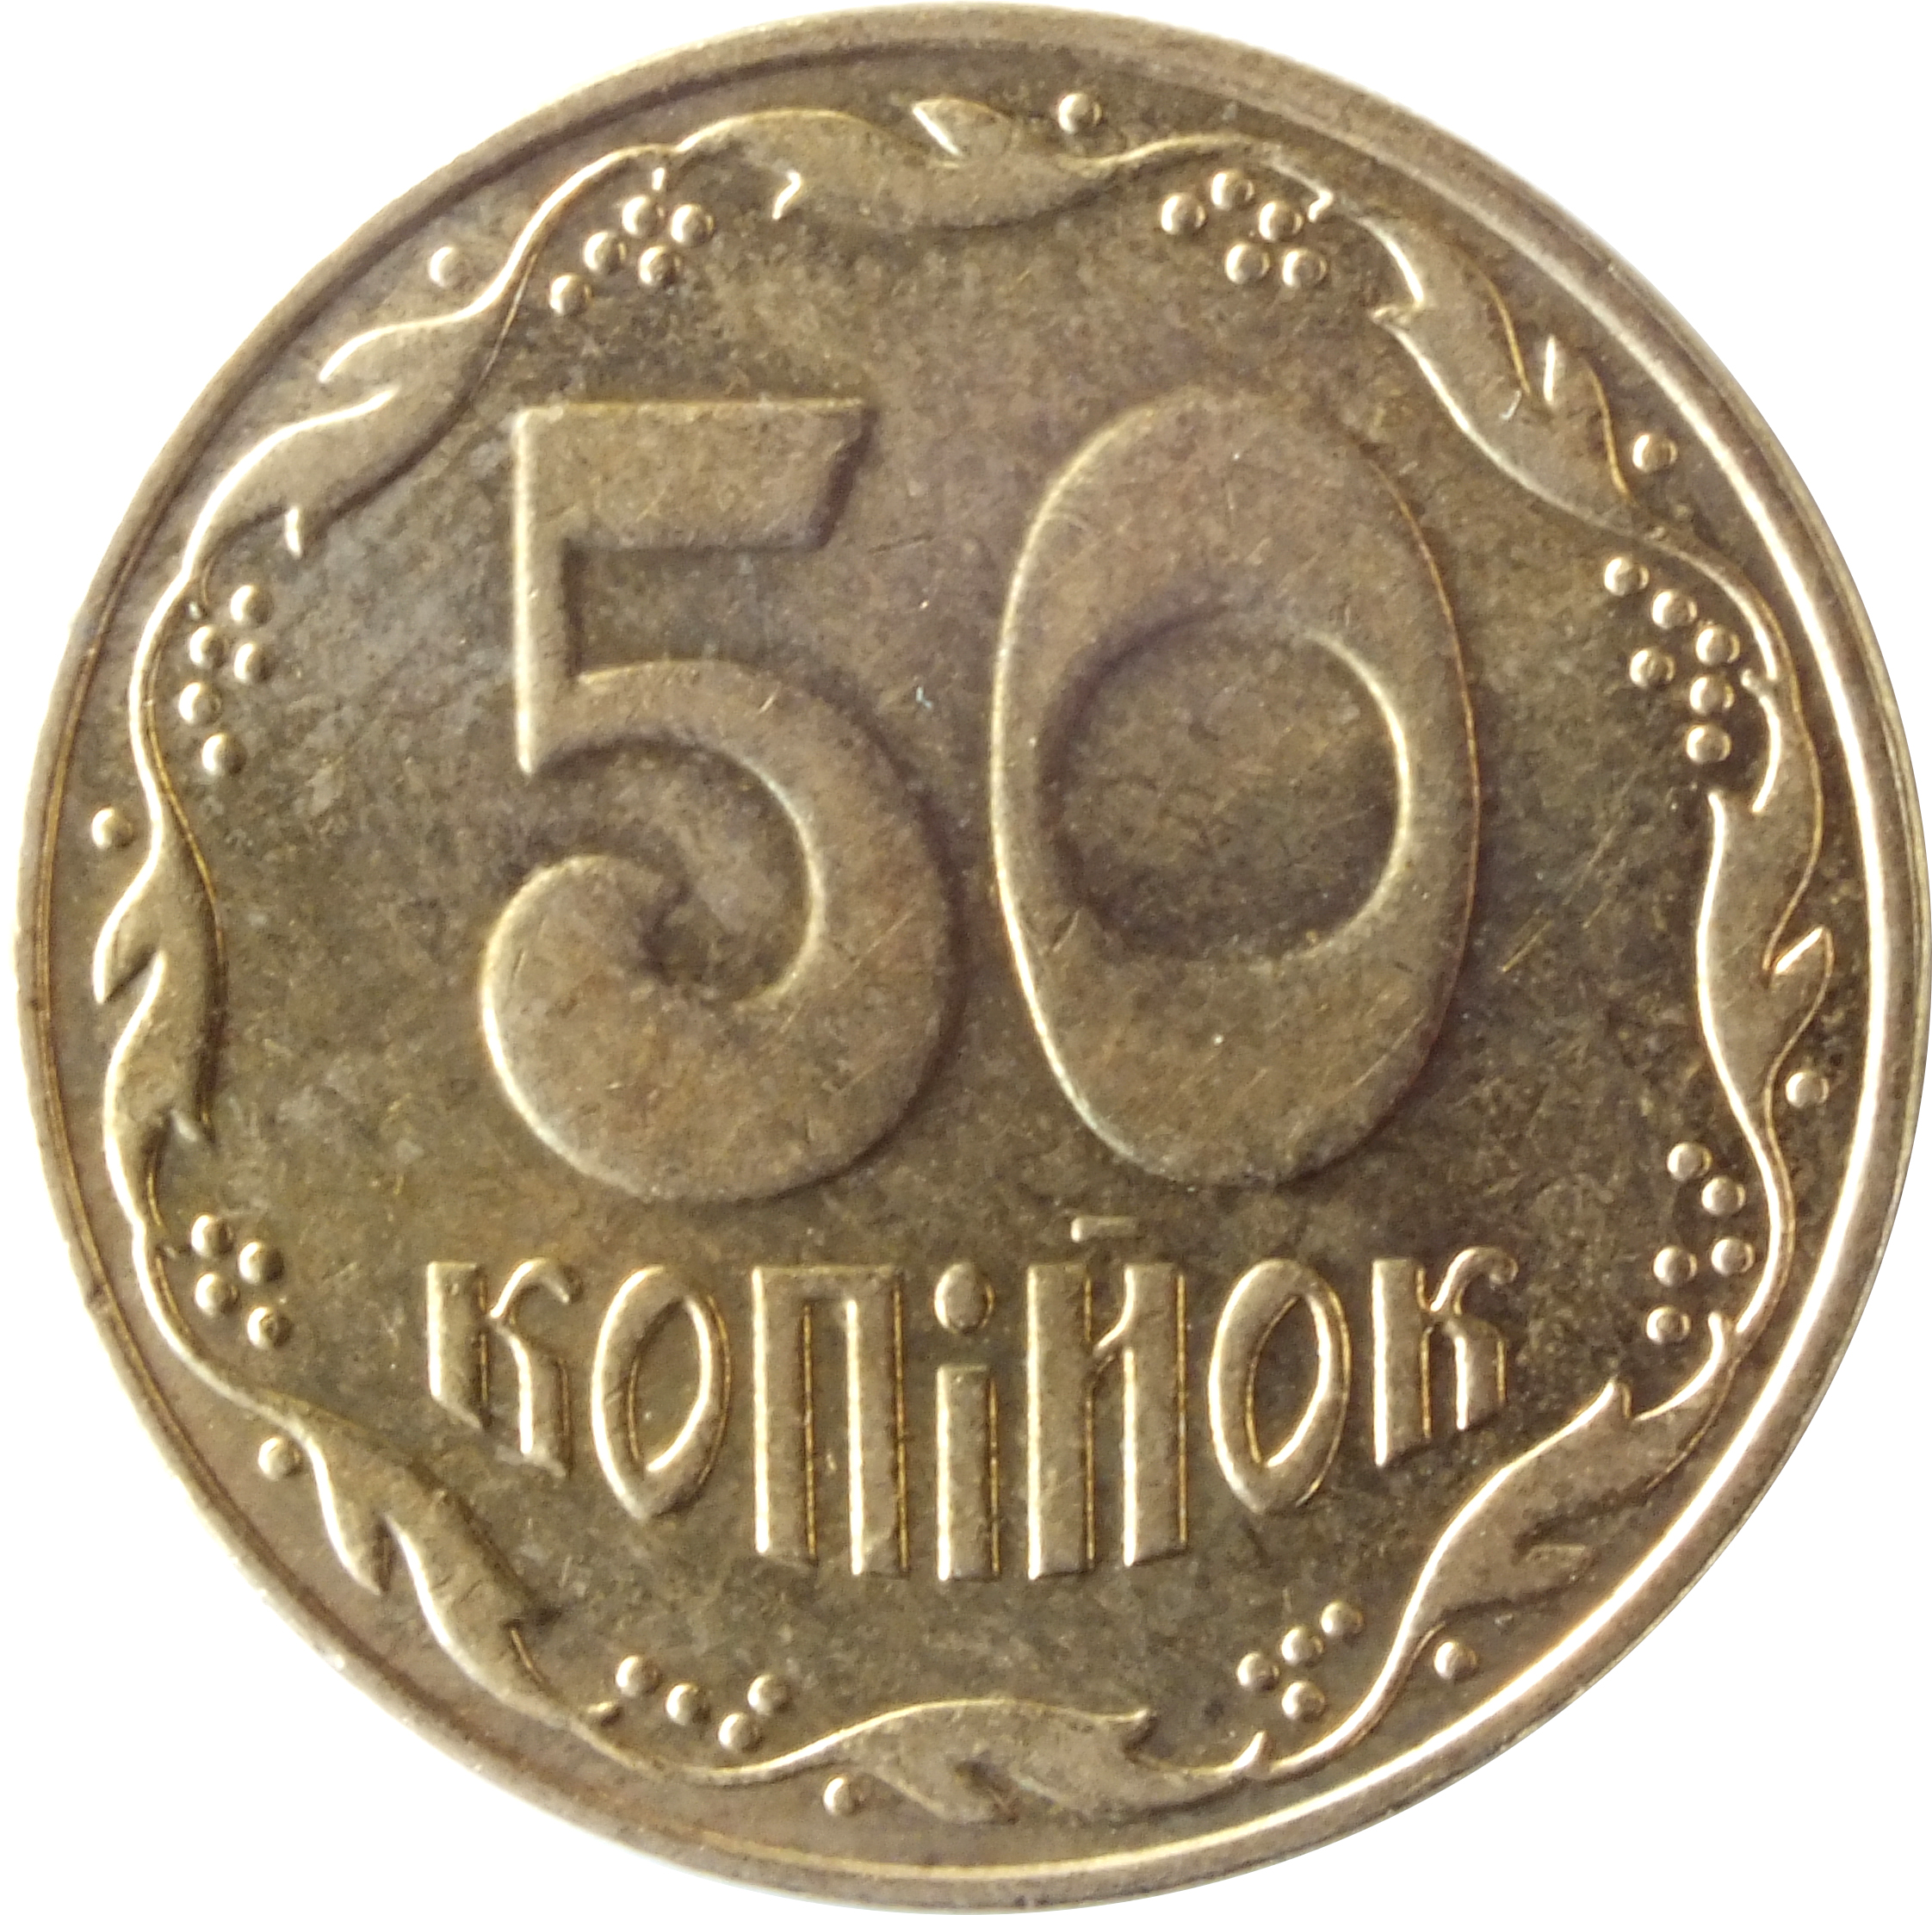 60 рублей 25 копеек. 25 Копеек 2011 Украина. Реверс монеты. Иностранные монеты 25 копеек. 2 Копейки 2011 Украина.